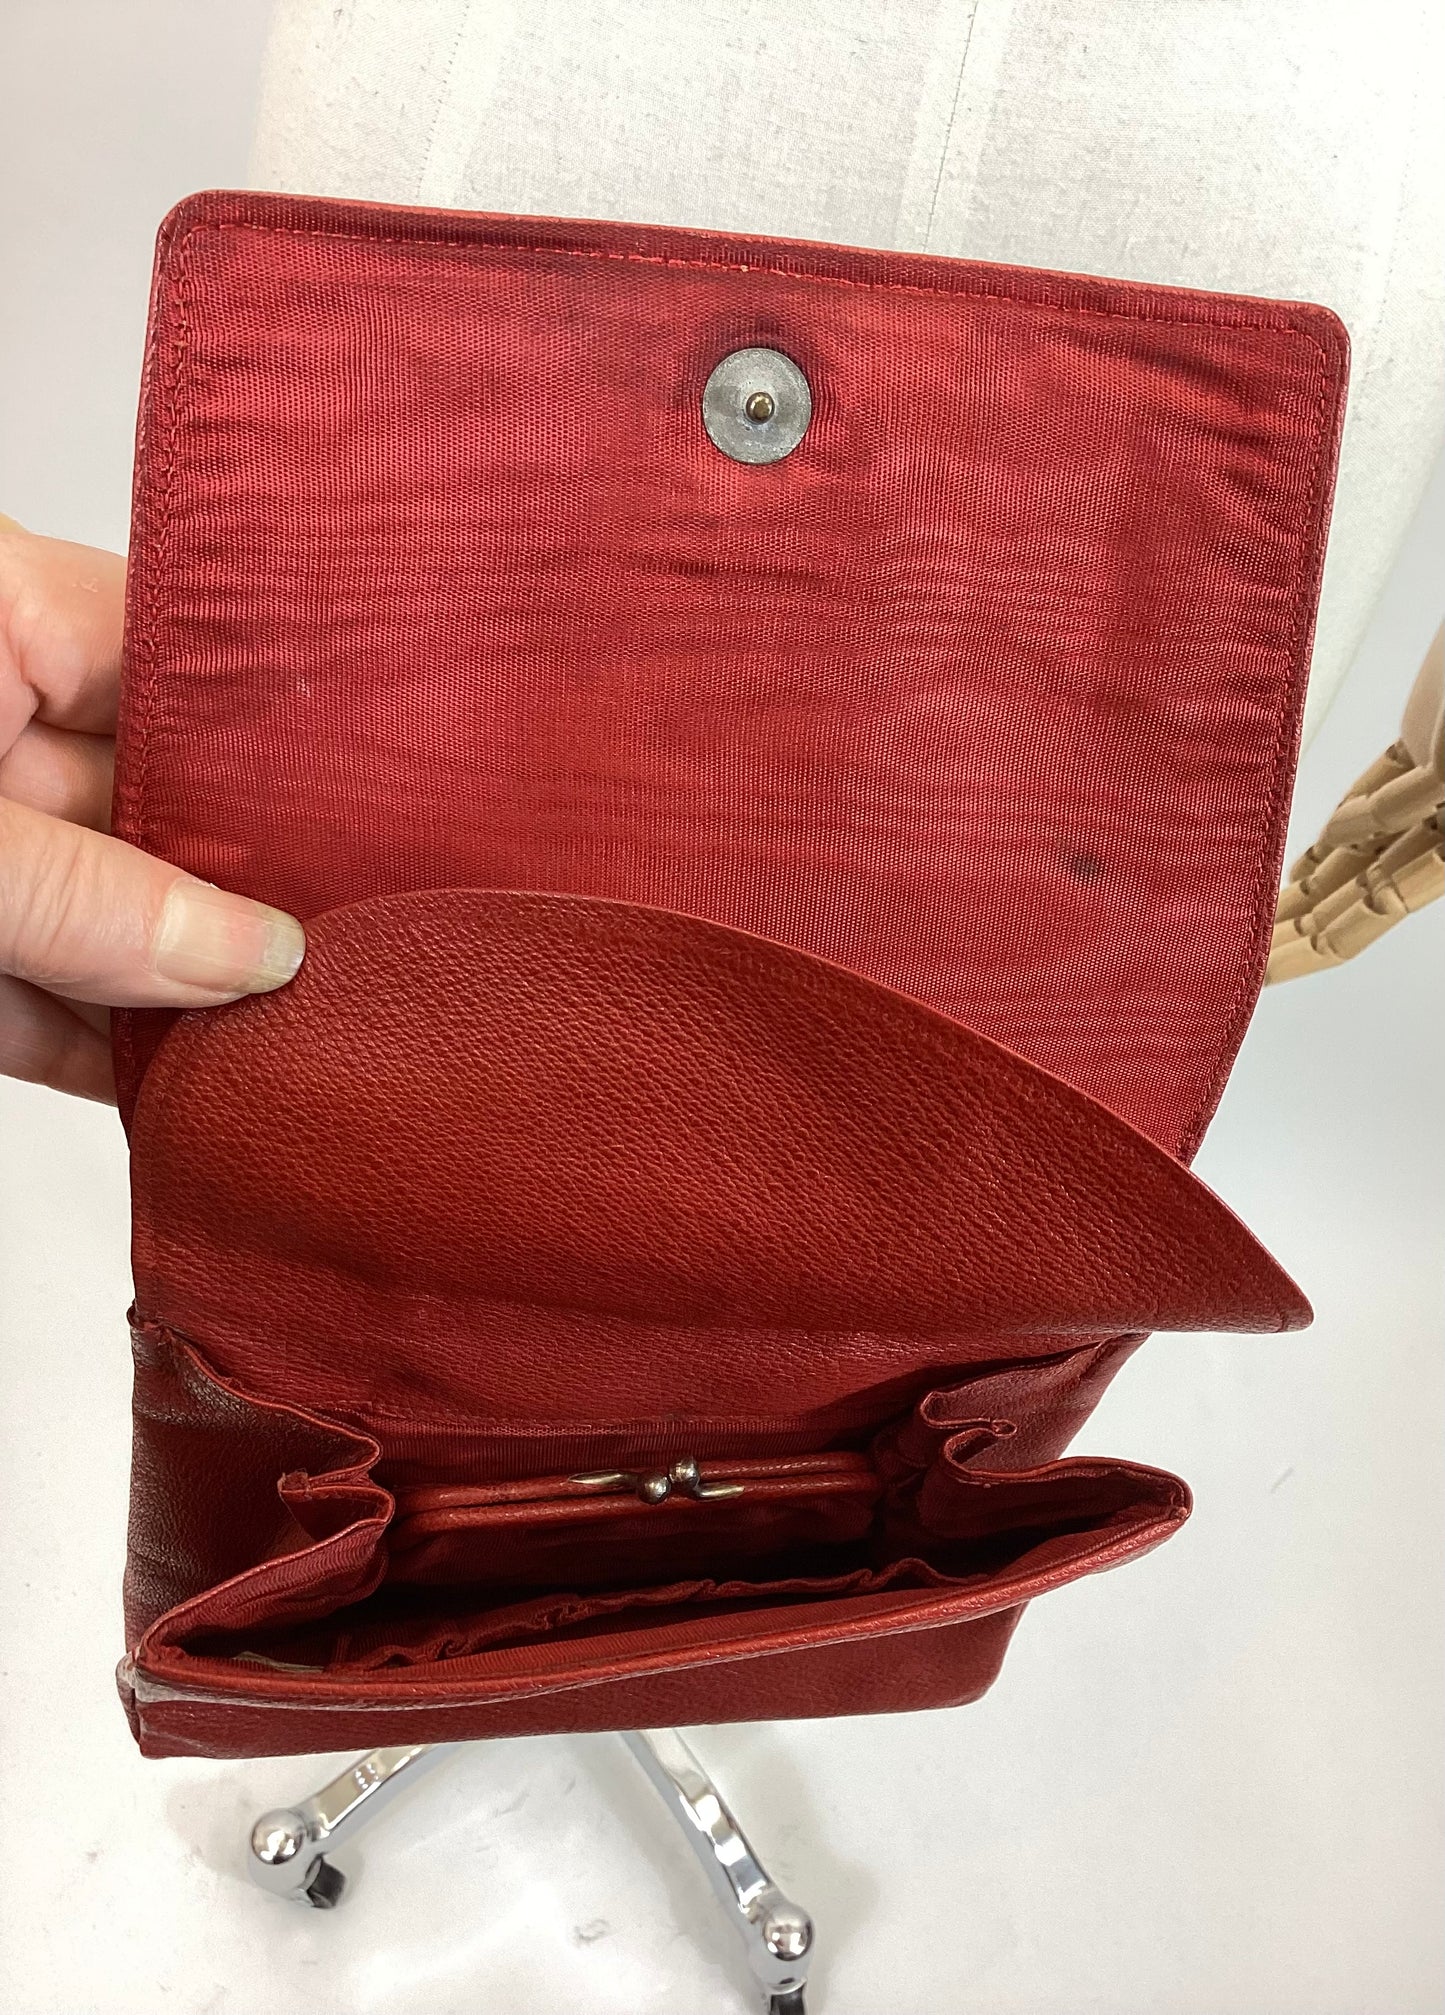 Original 1930’s dainty Handbag - Striking Red colour